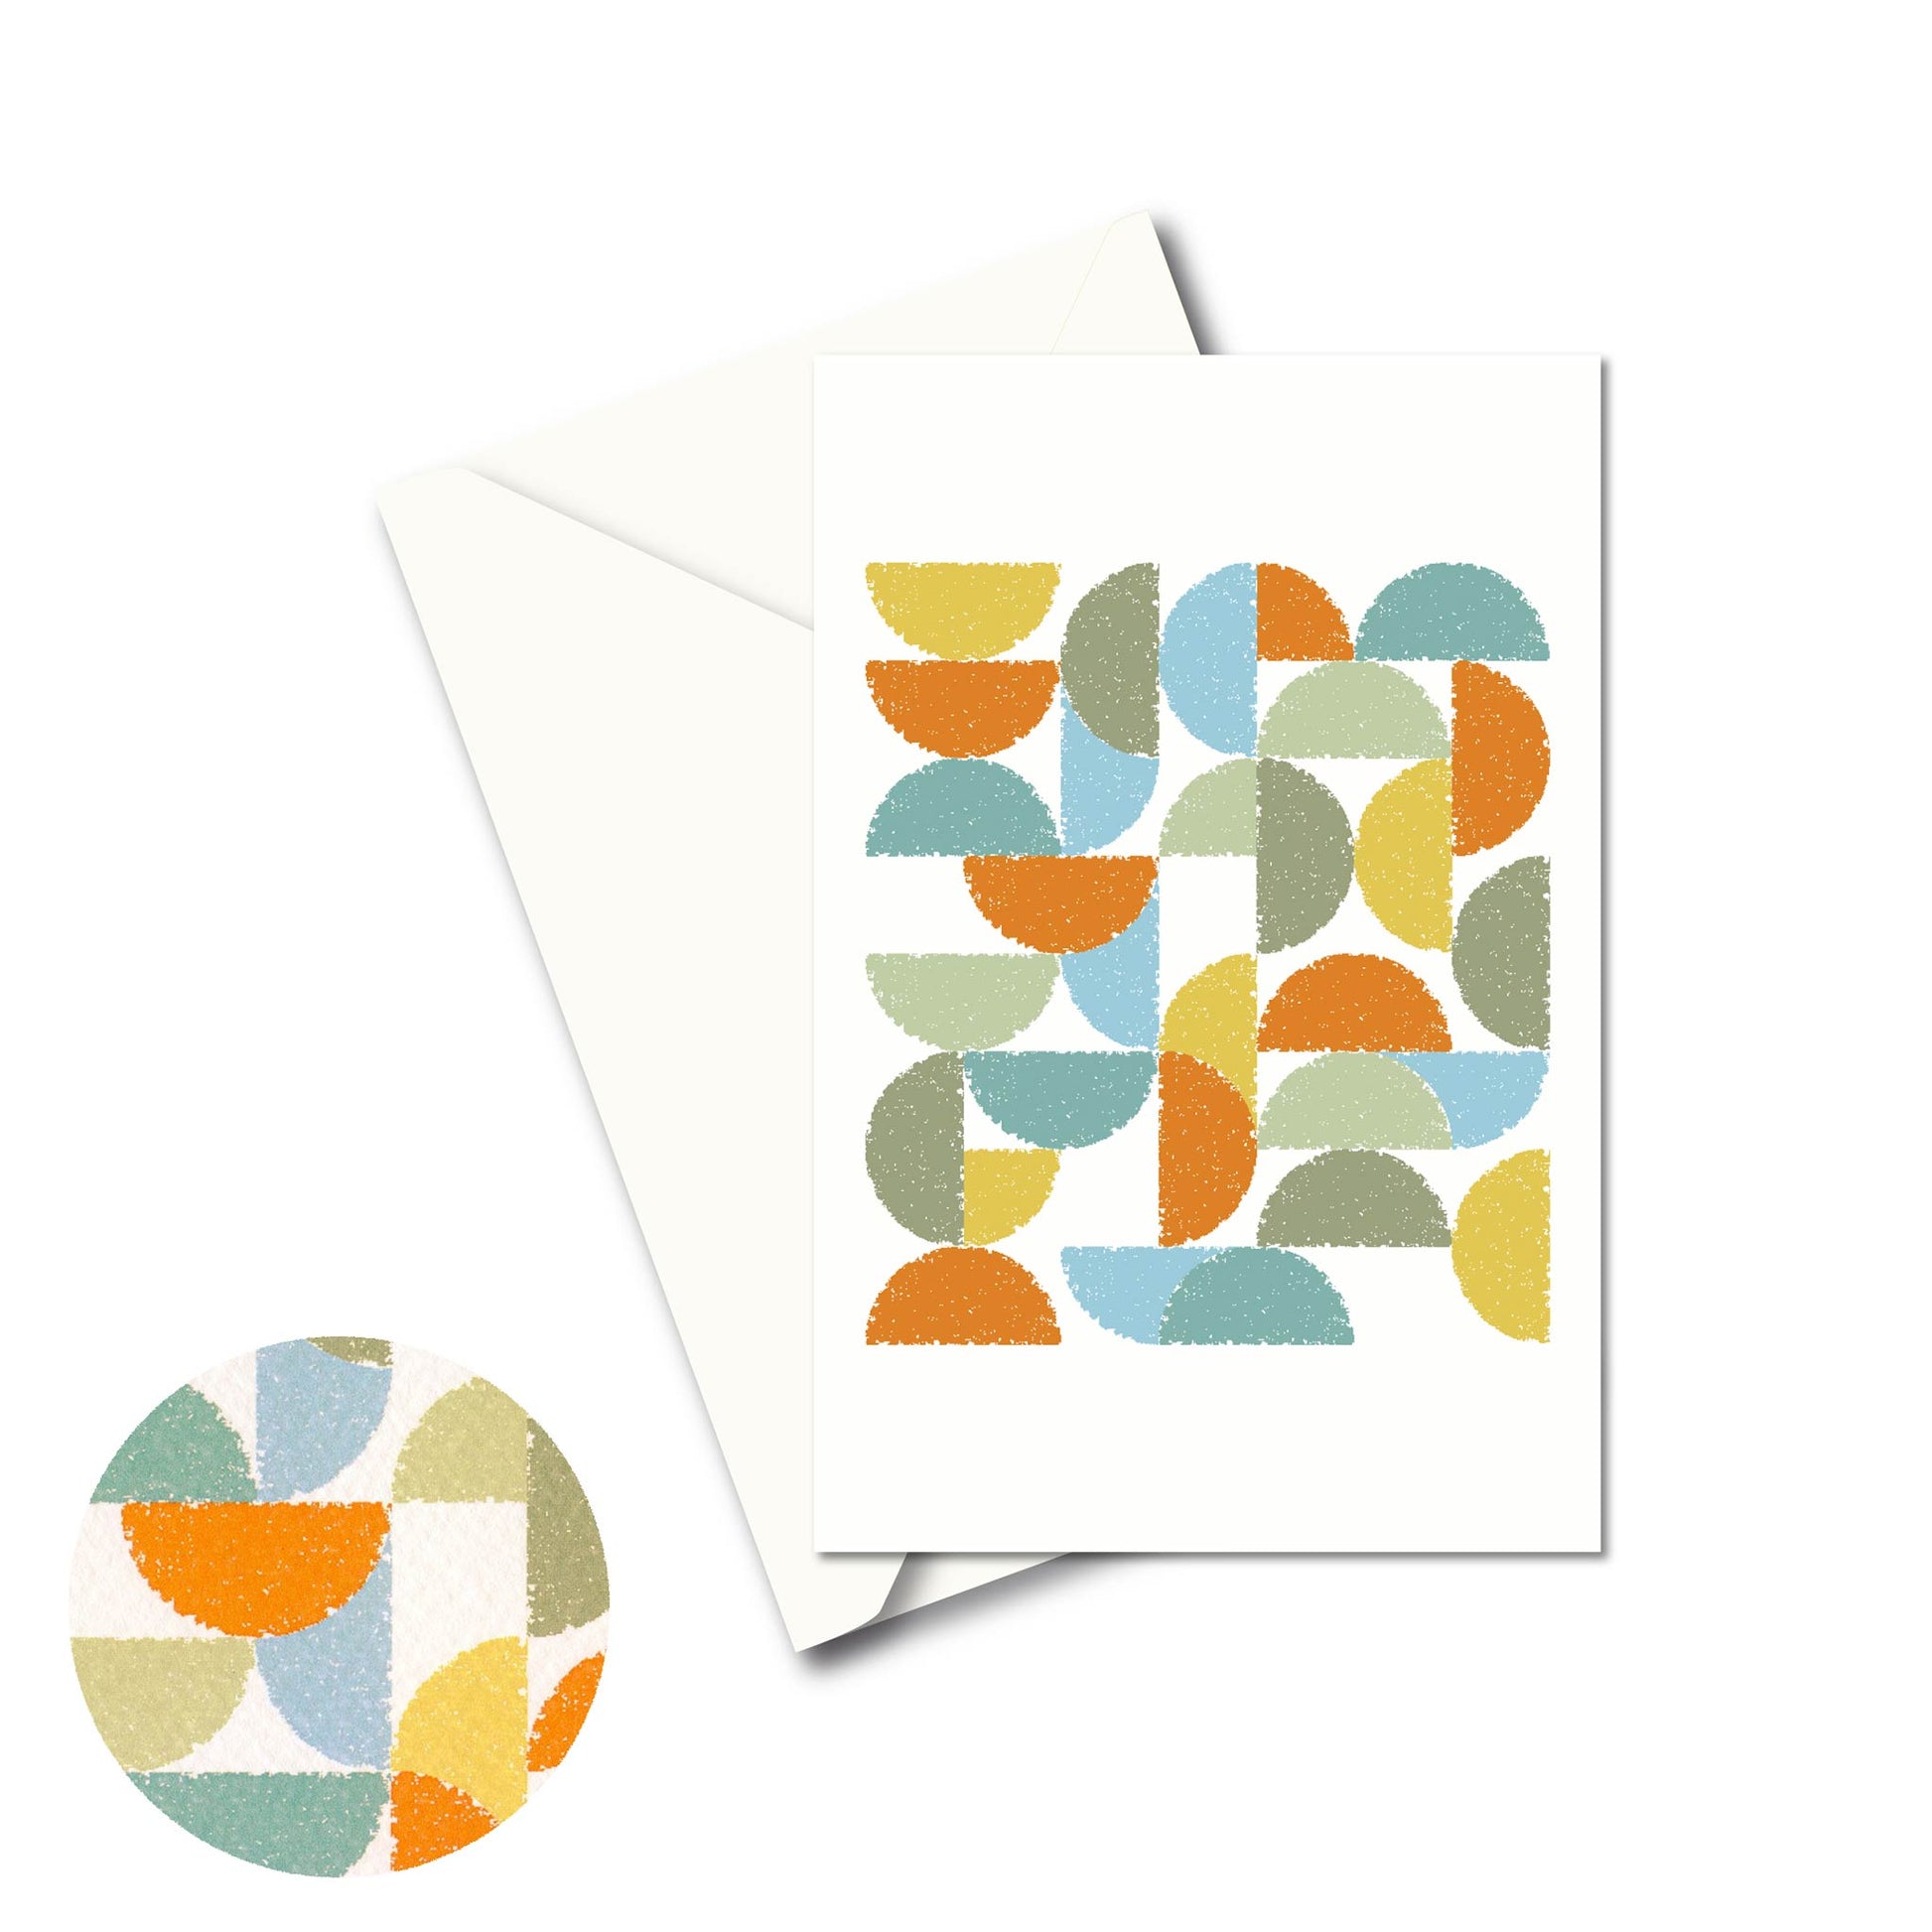 Productafbeelding, wenskaart "ronde kleuren naar terra", de voorzijde met een envelop